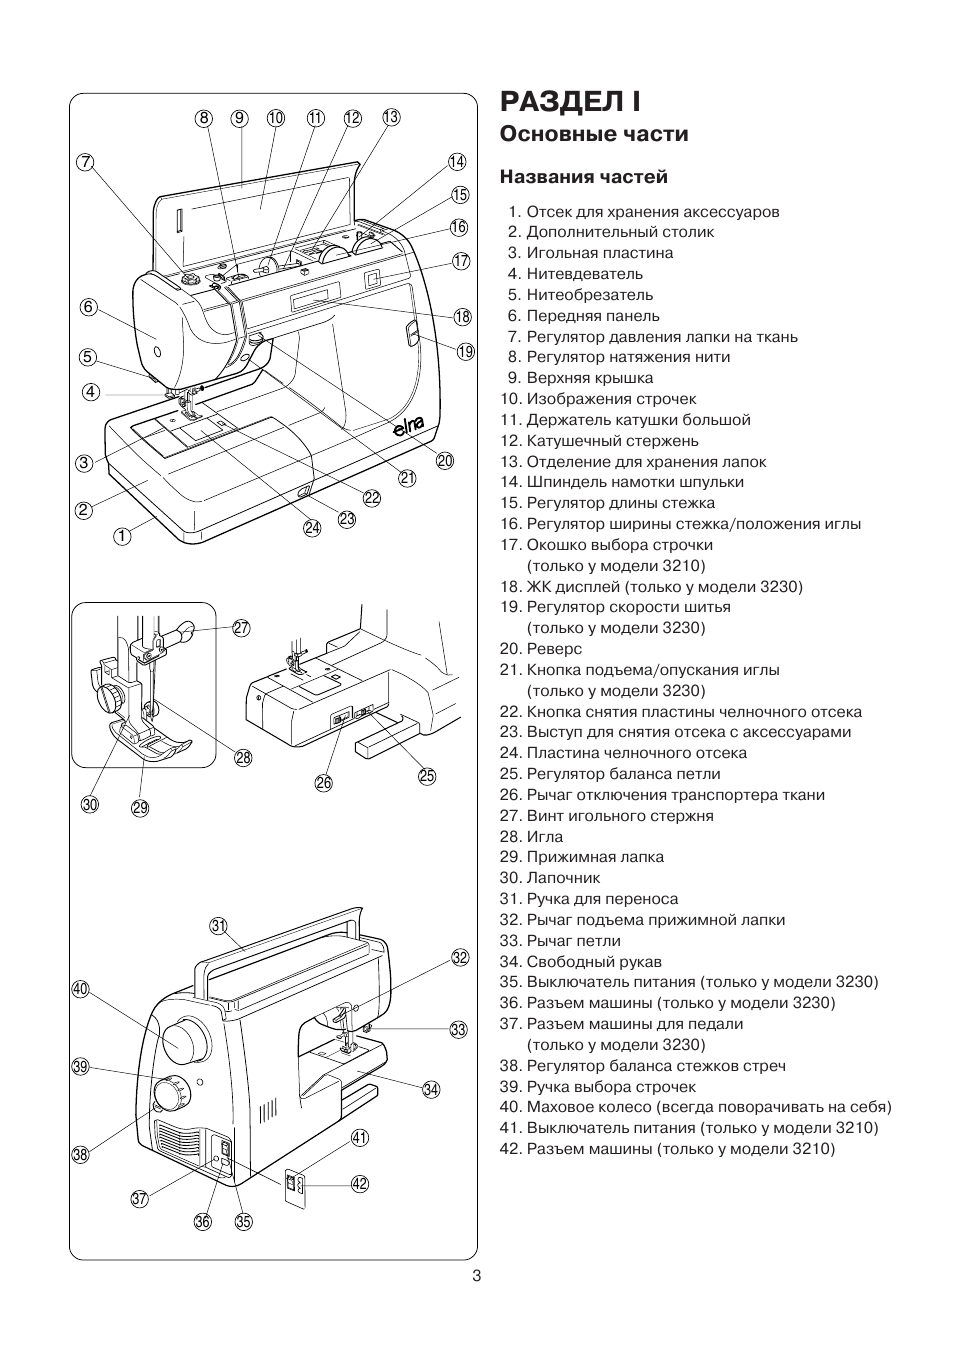 Швейная машинка Электа esm110 документация